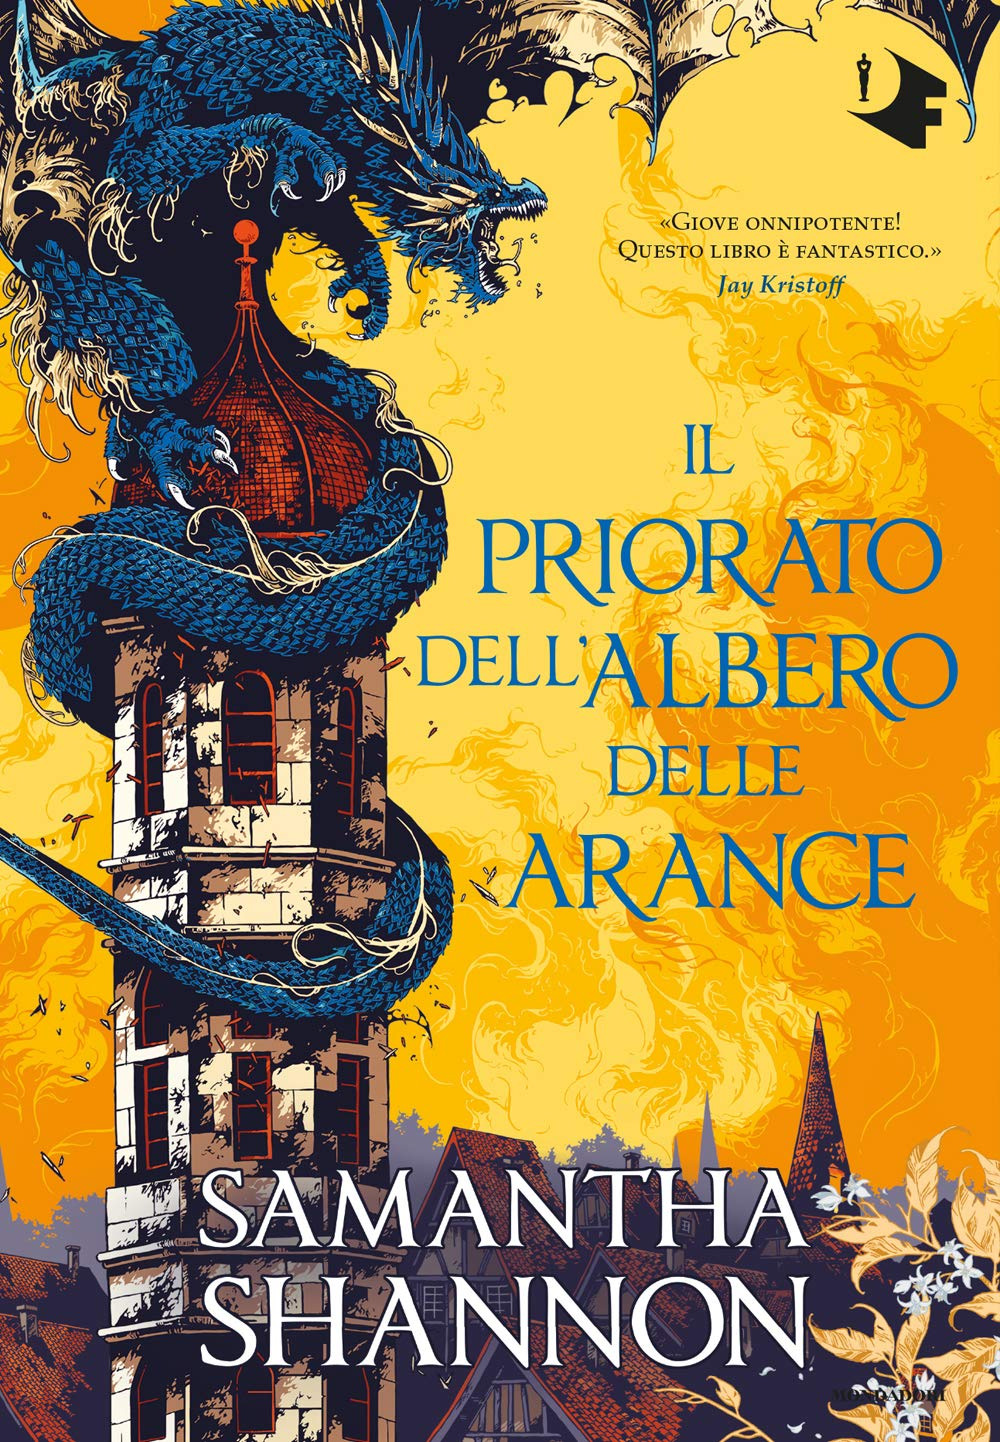 Il Priorato dell'Albero delle Arance di Samantha Shannon (Autore)